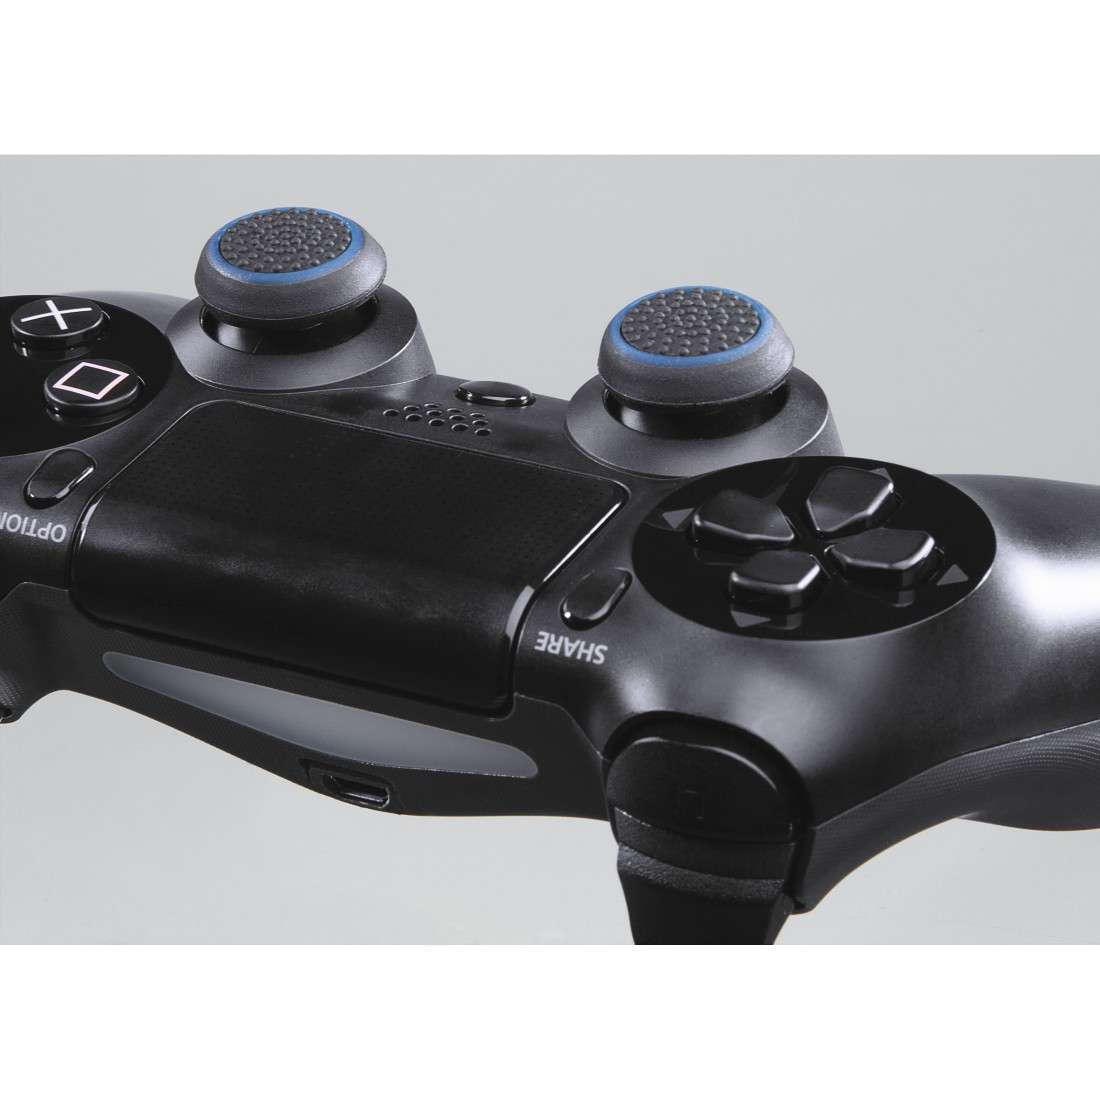 Control-Stick-Aufsätze-Set Colors 8in1 für PlayStation/Xbox